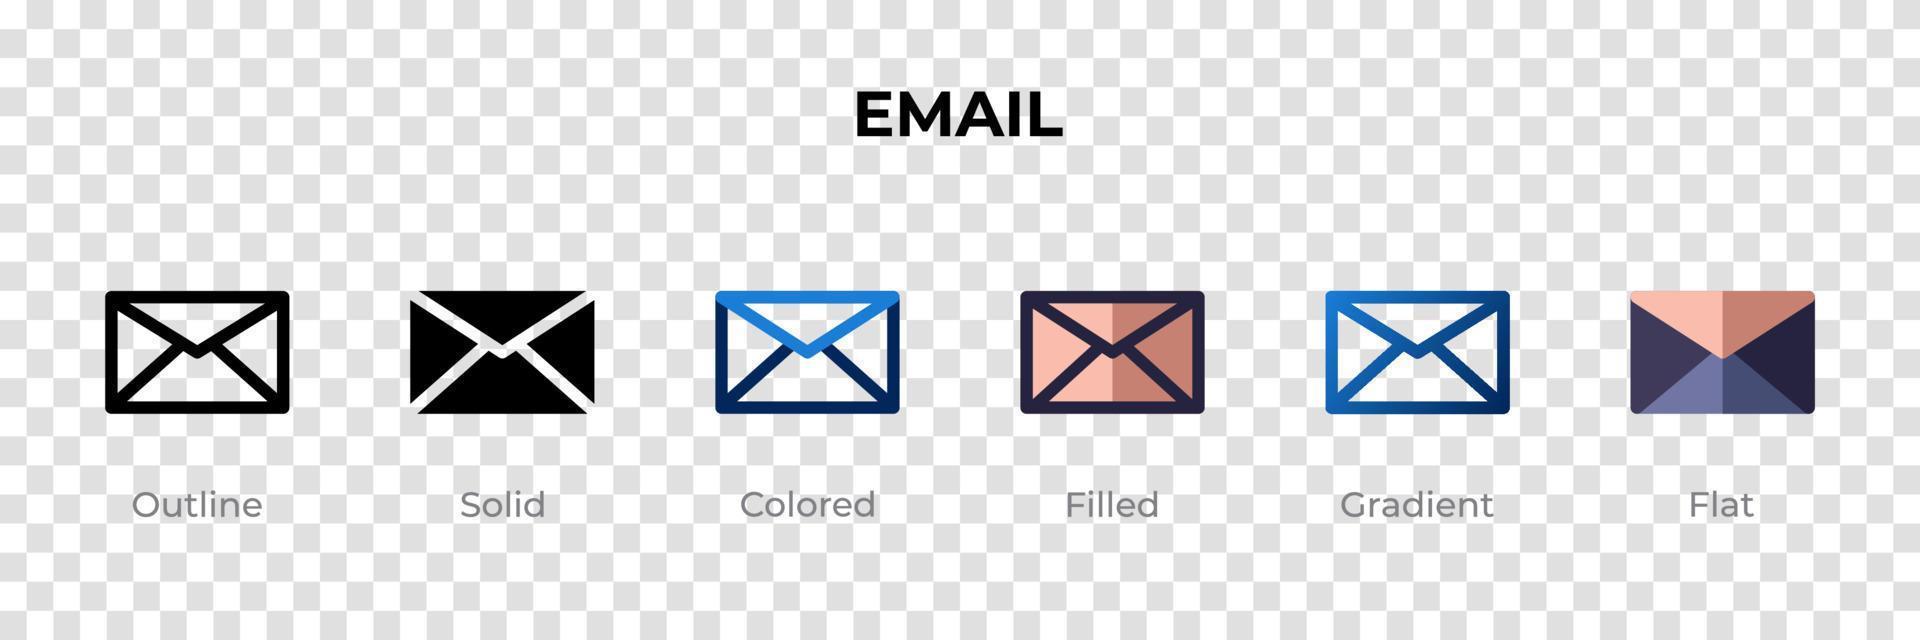 icono de correo electrónico en un estilo diferente. iconos vectoriales de correo electrónico diseñados en estilo de contorno, sólido, coloreado, relleno, degradado y plano. símbolo, ilustración de logotipo. ilustración vectorial vector